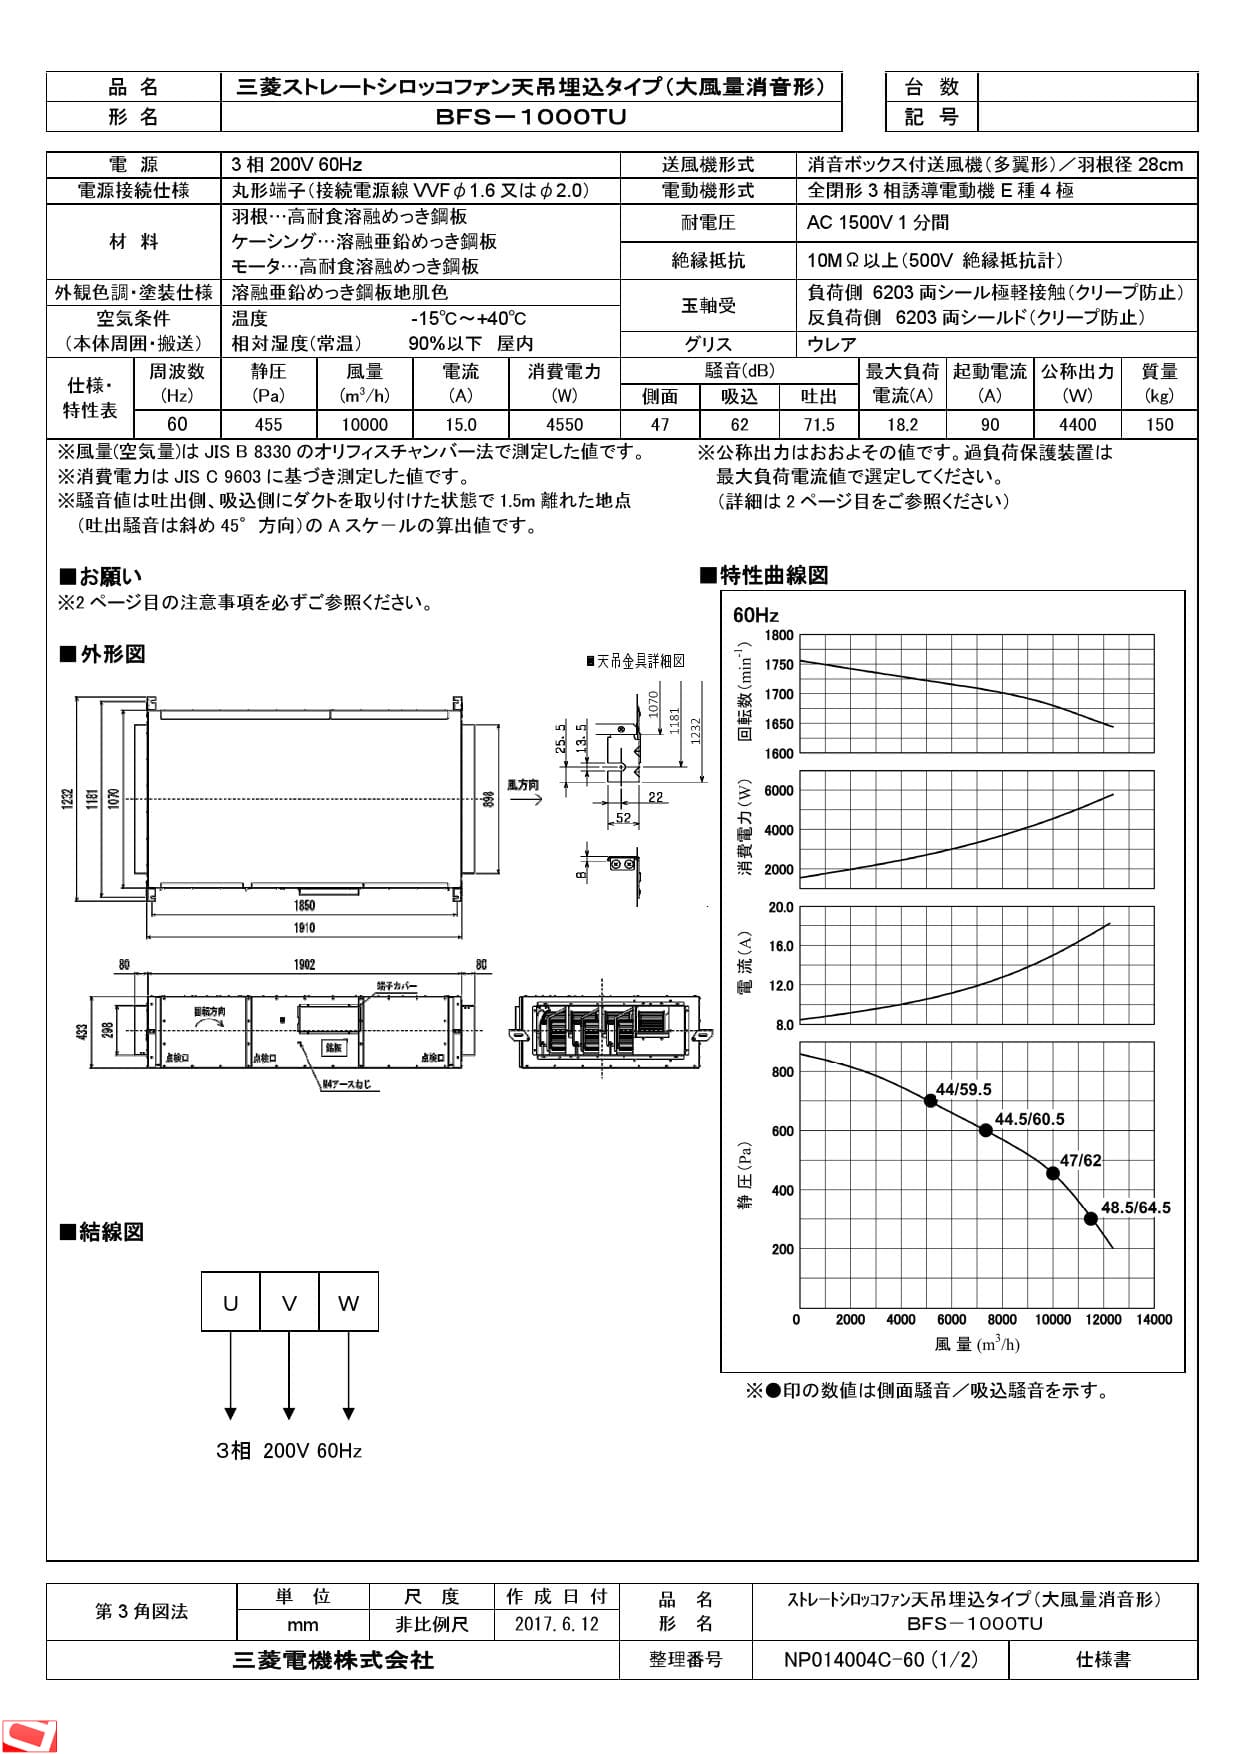 三菱電機 BFS-1000TU納入仕様図 | 通販 プロストア ダイレクト